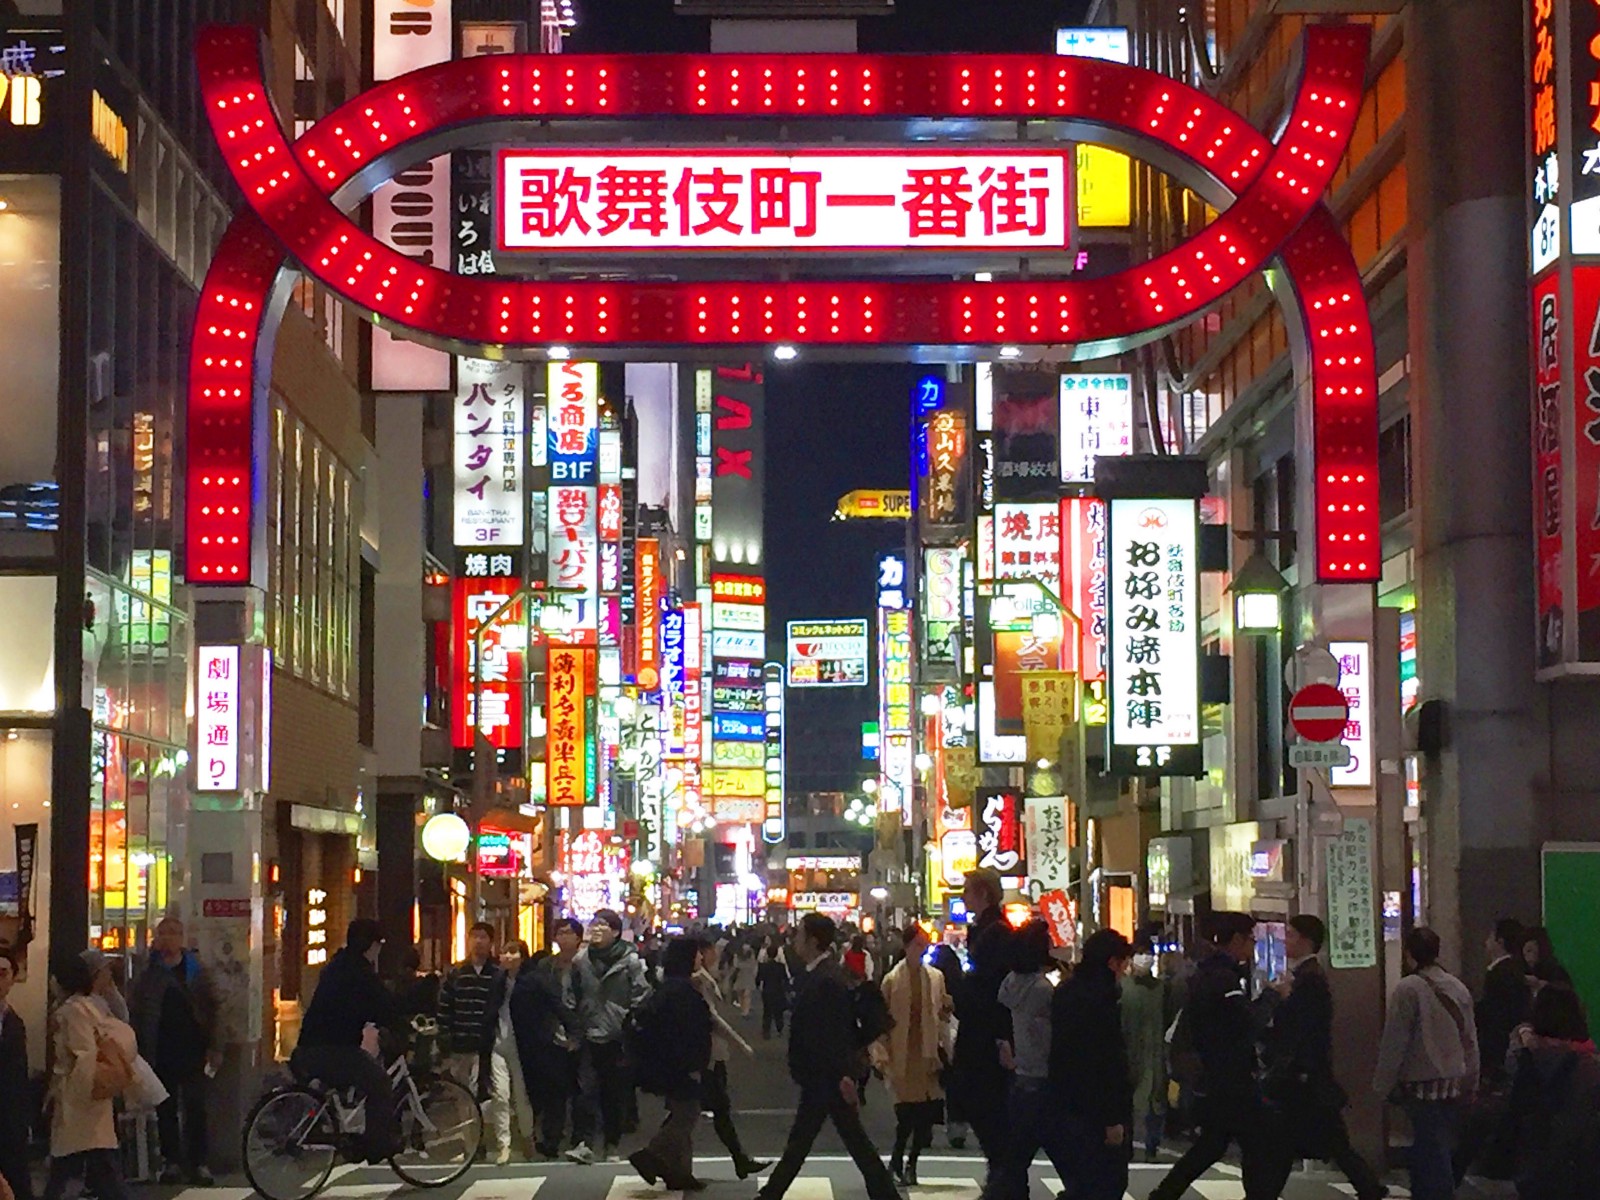 The iconic Kabukicho Gate at night